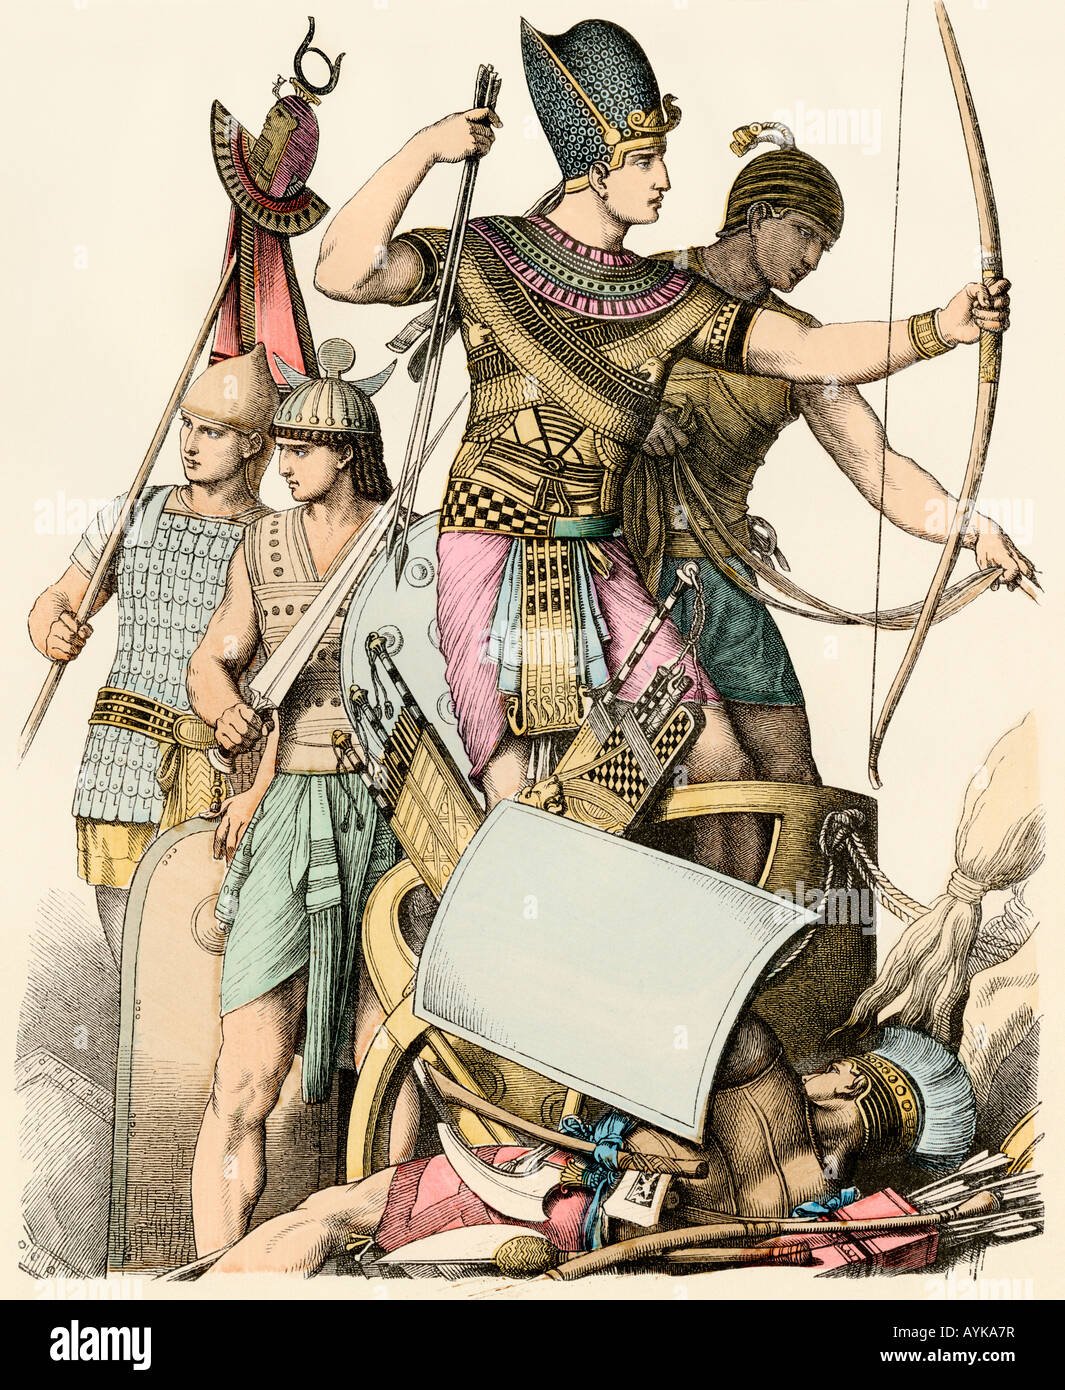 Le pharaon égyptien des soldats au combat. Impression couleur à la main Banque D'Images